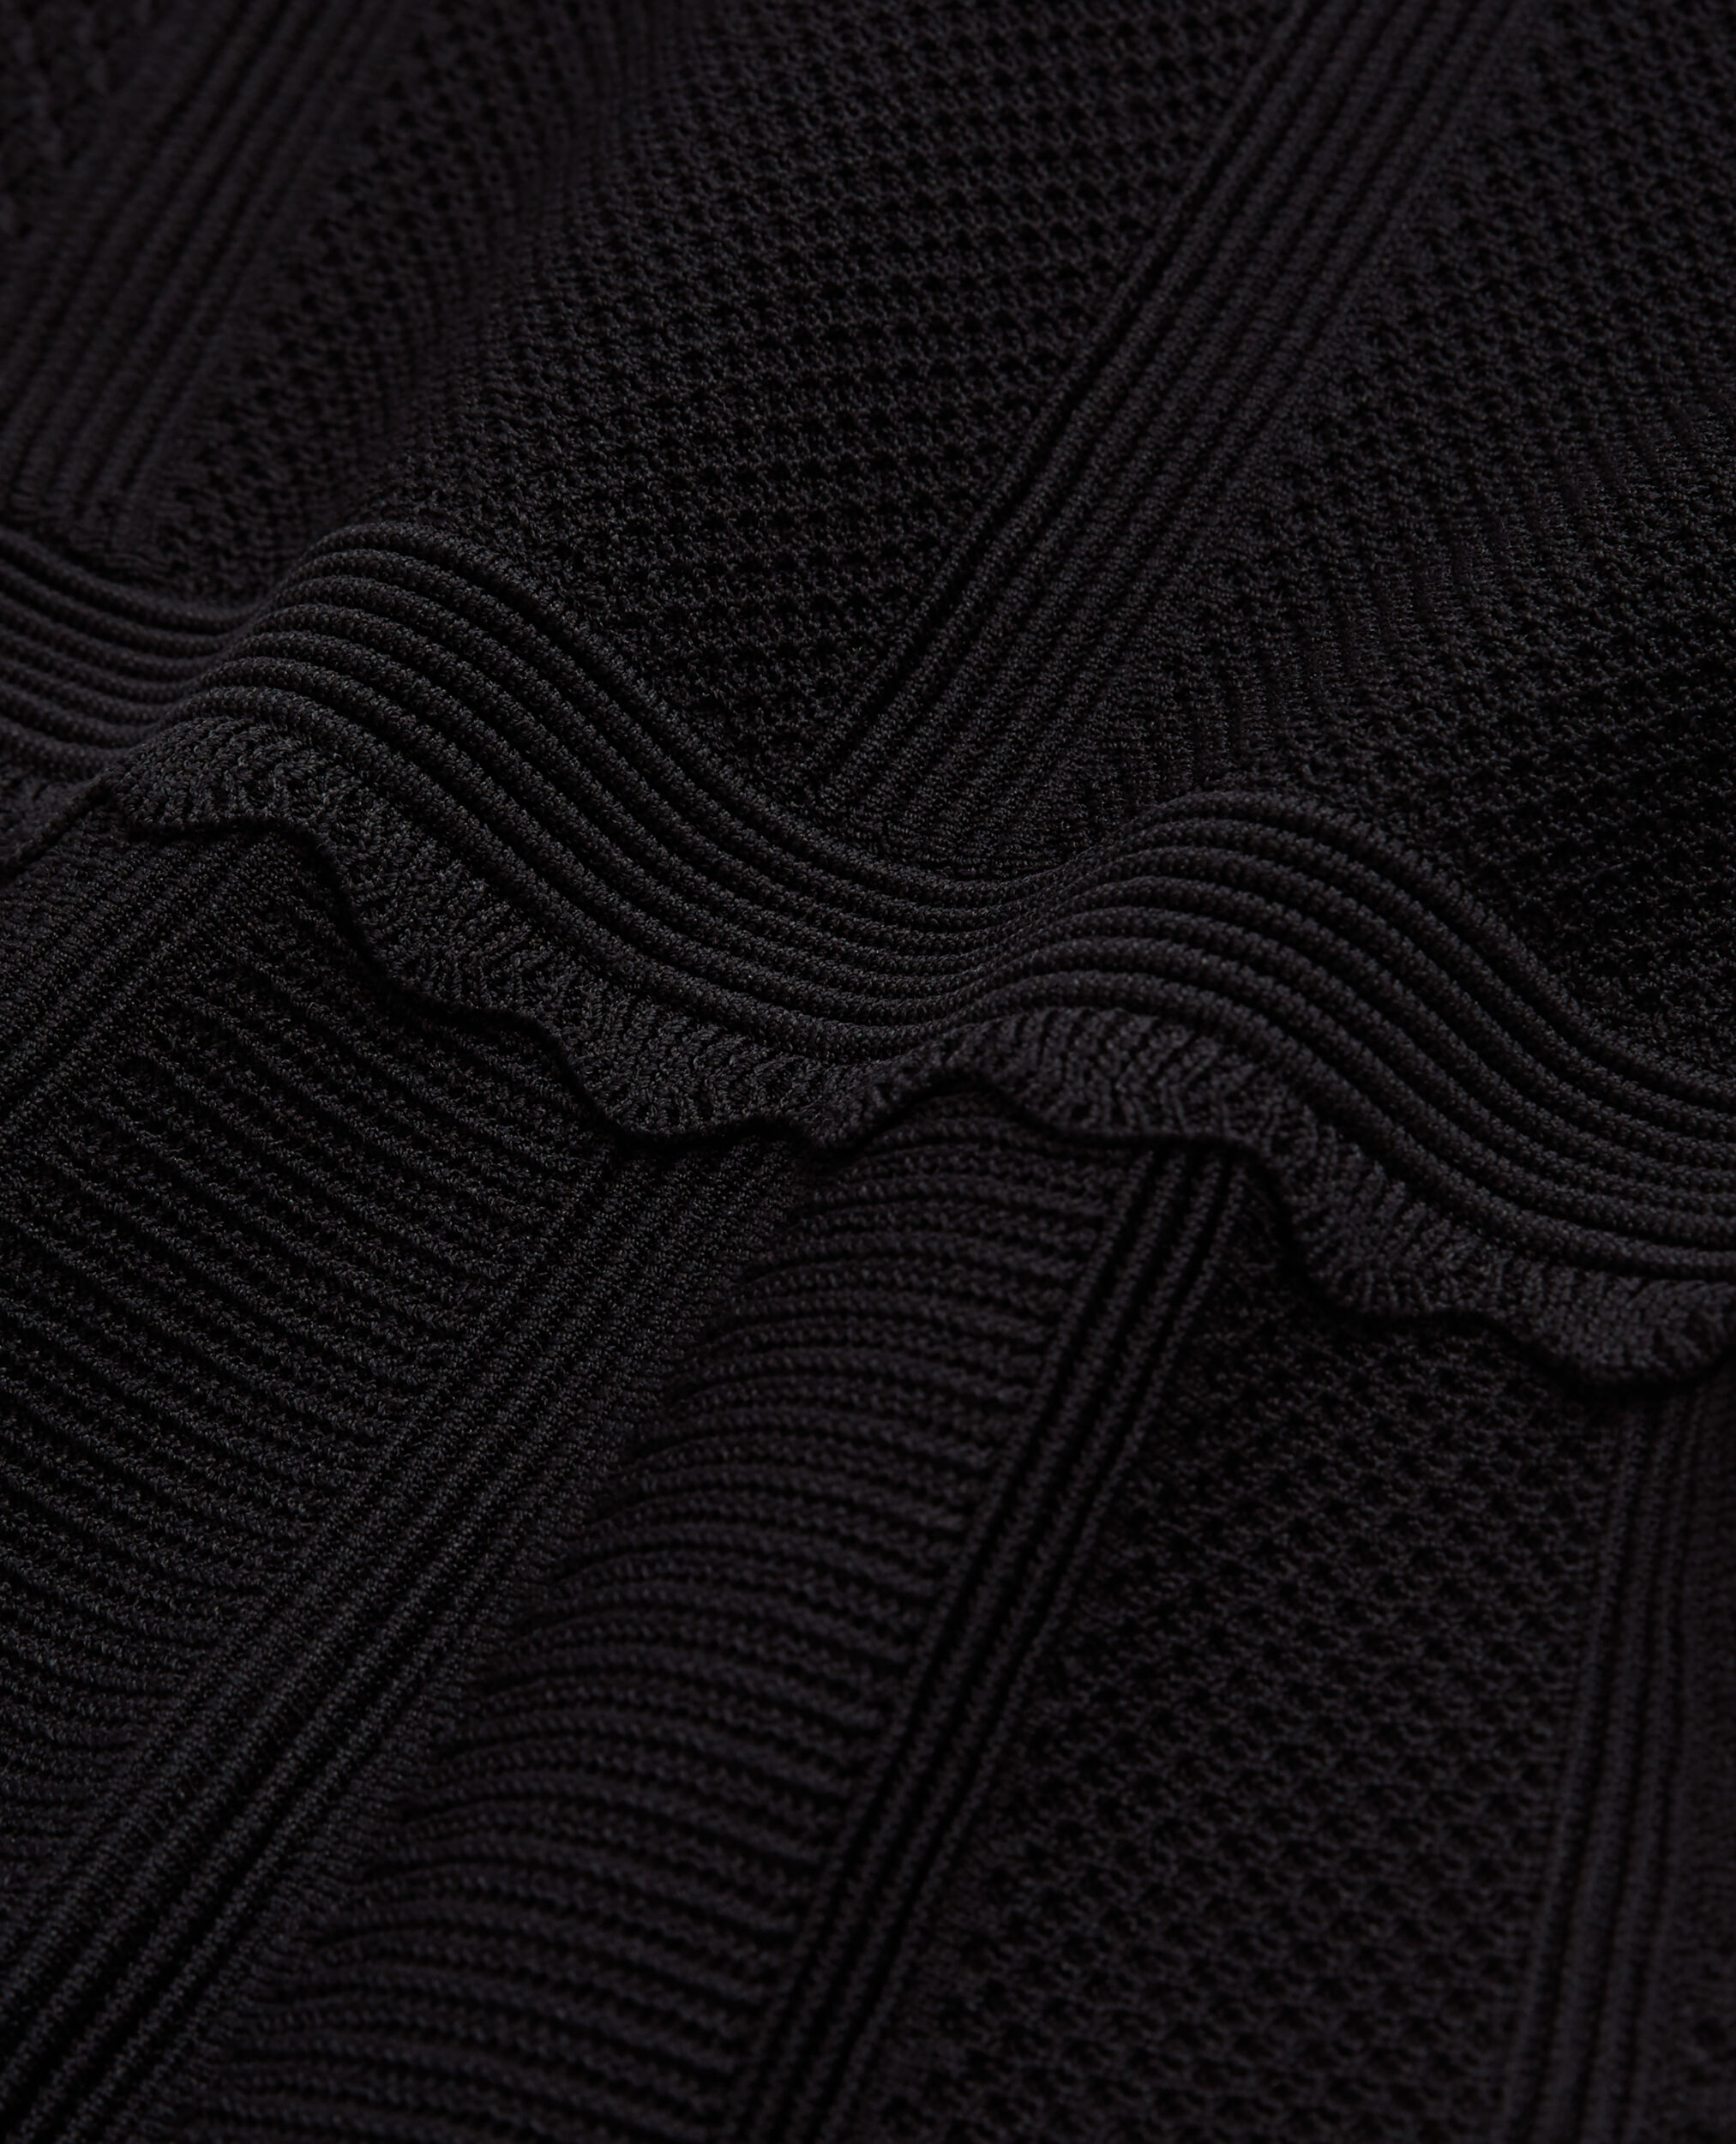 Short black knit dress, BLACK, hi-res image number null